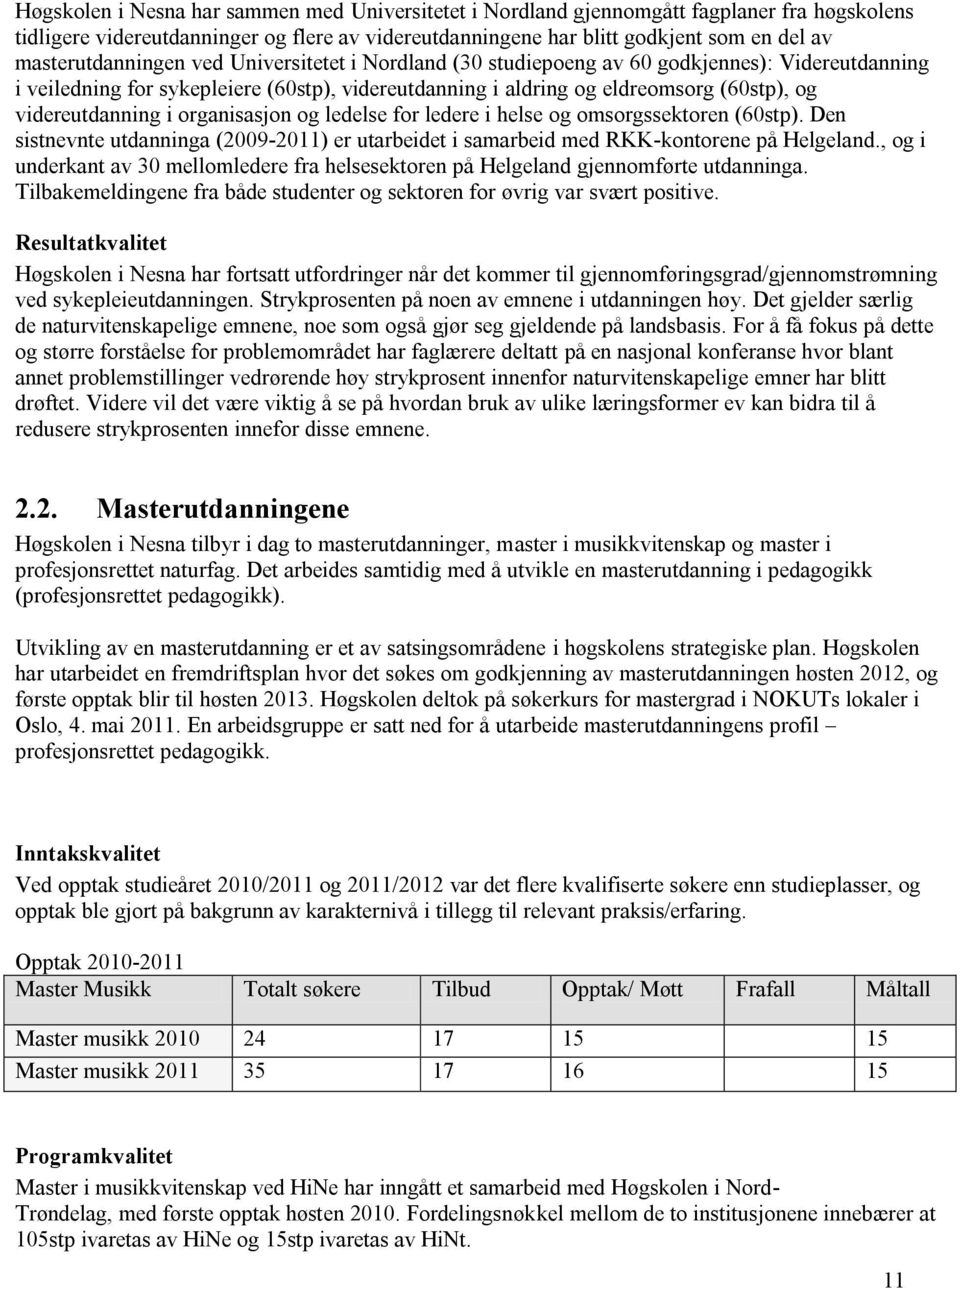 videreutdanning i organisasjon og ledelse for ledere i helse og omsorgssektoren (60stp). Den sistnevnte utdanninga (2009-2011) er utarbeidet i samarbeid med RKK-kontorene på Helgeland.